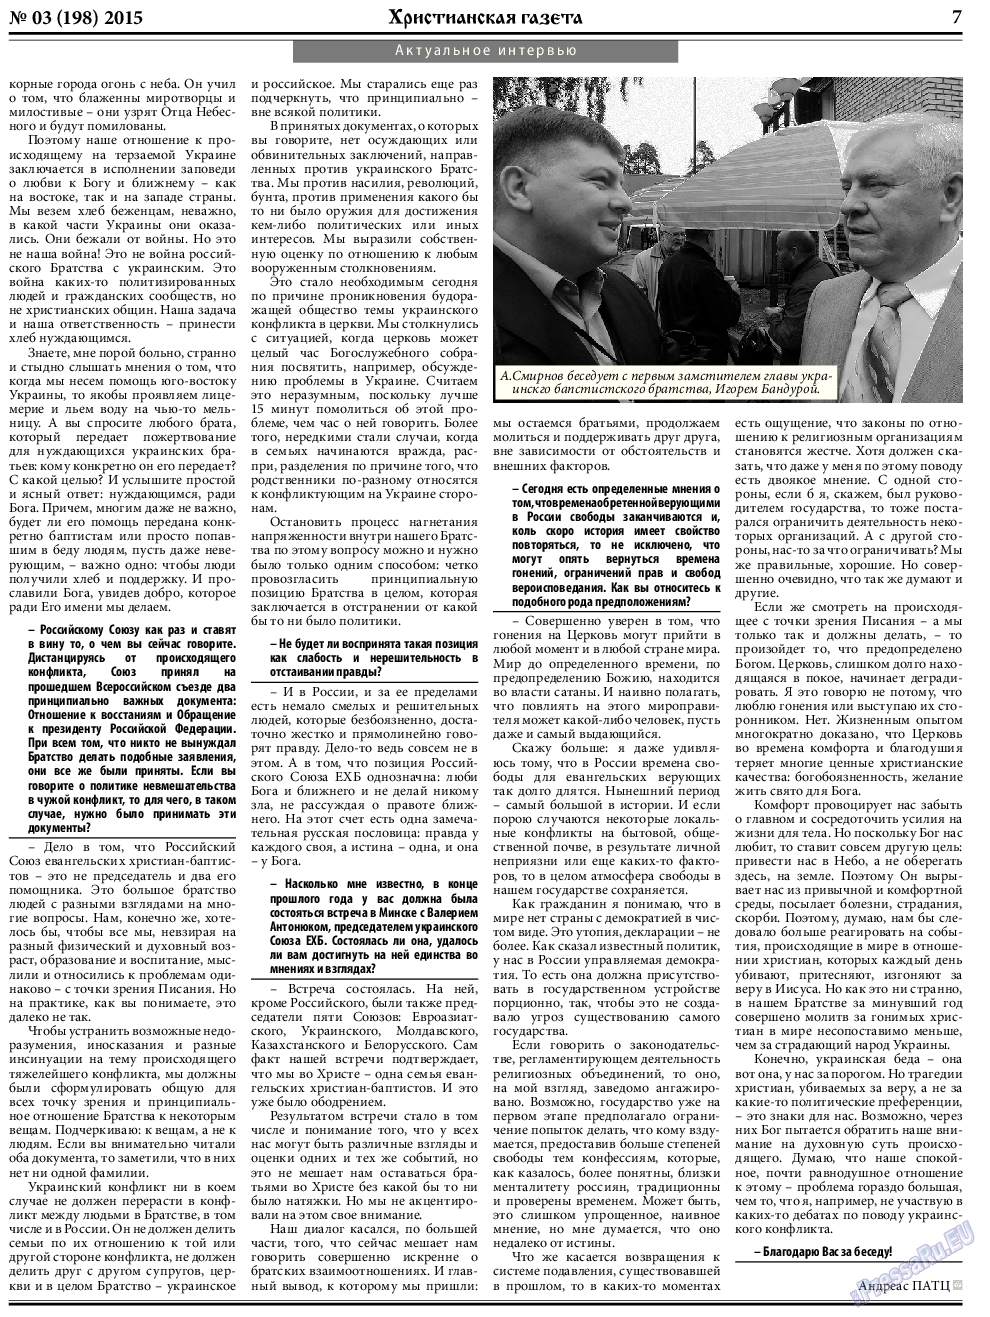 Христианская газета, газета. 2015 №3 стр.7